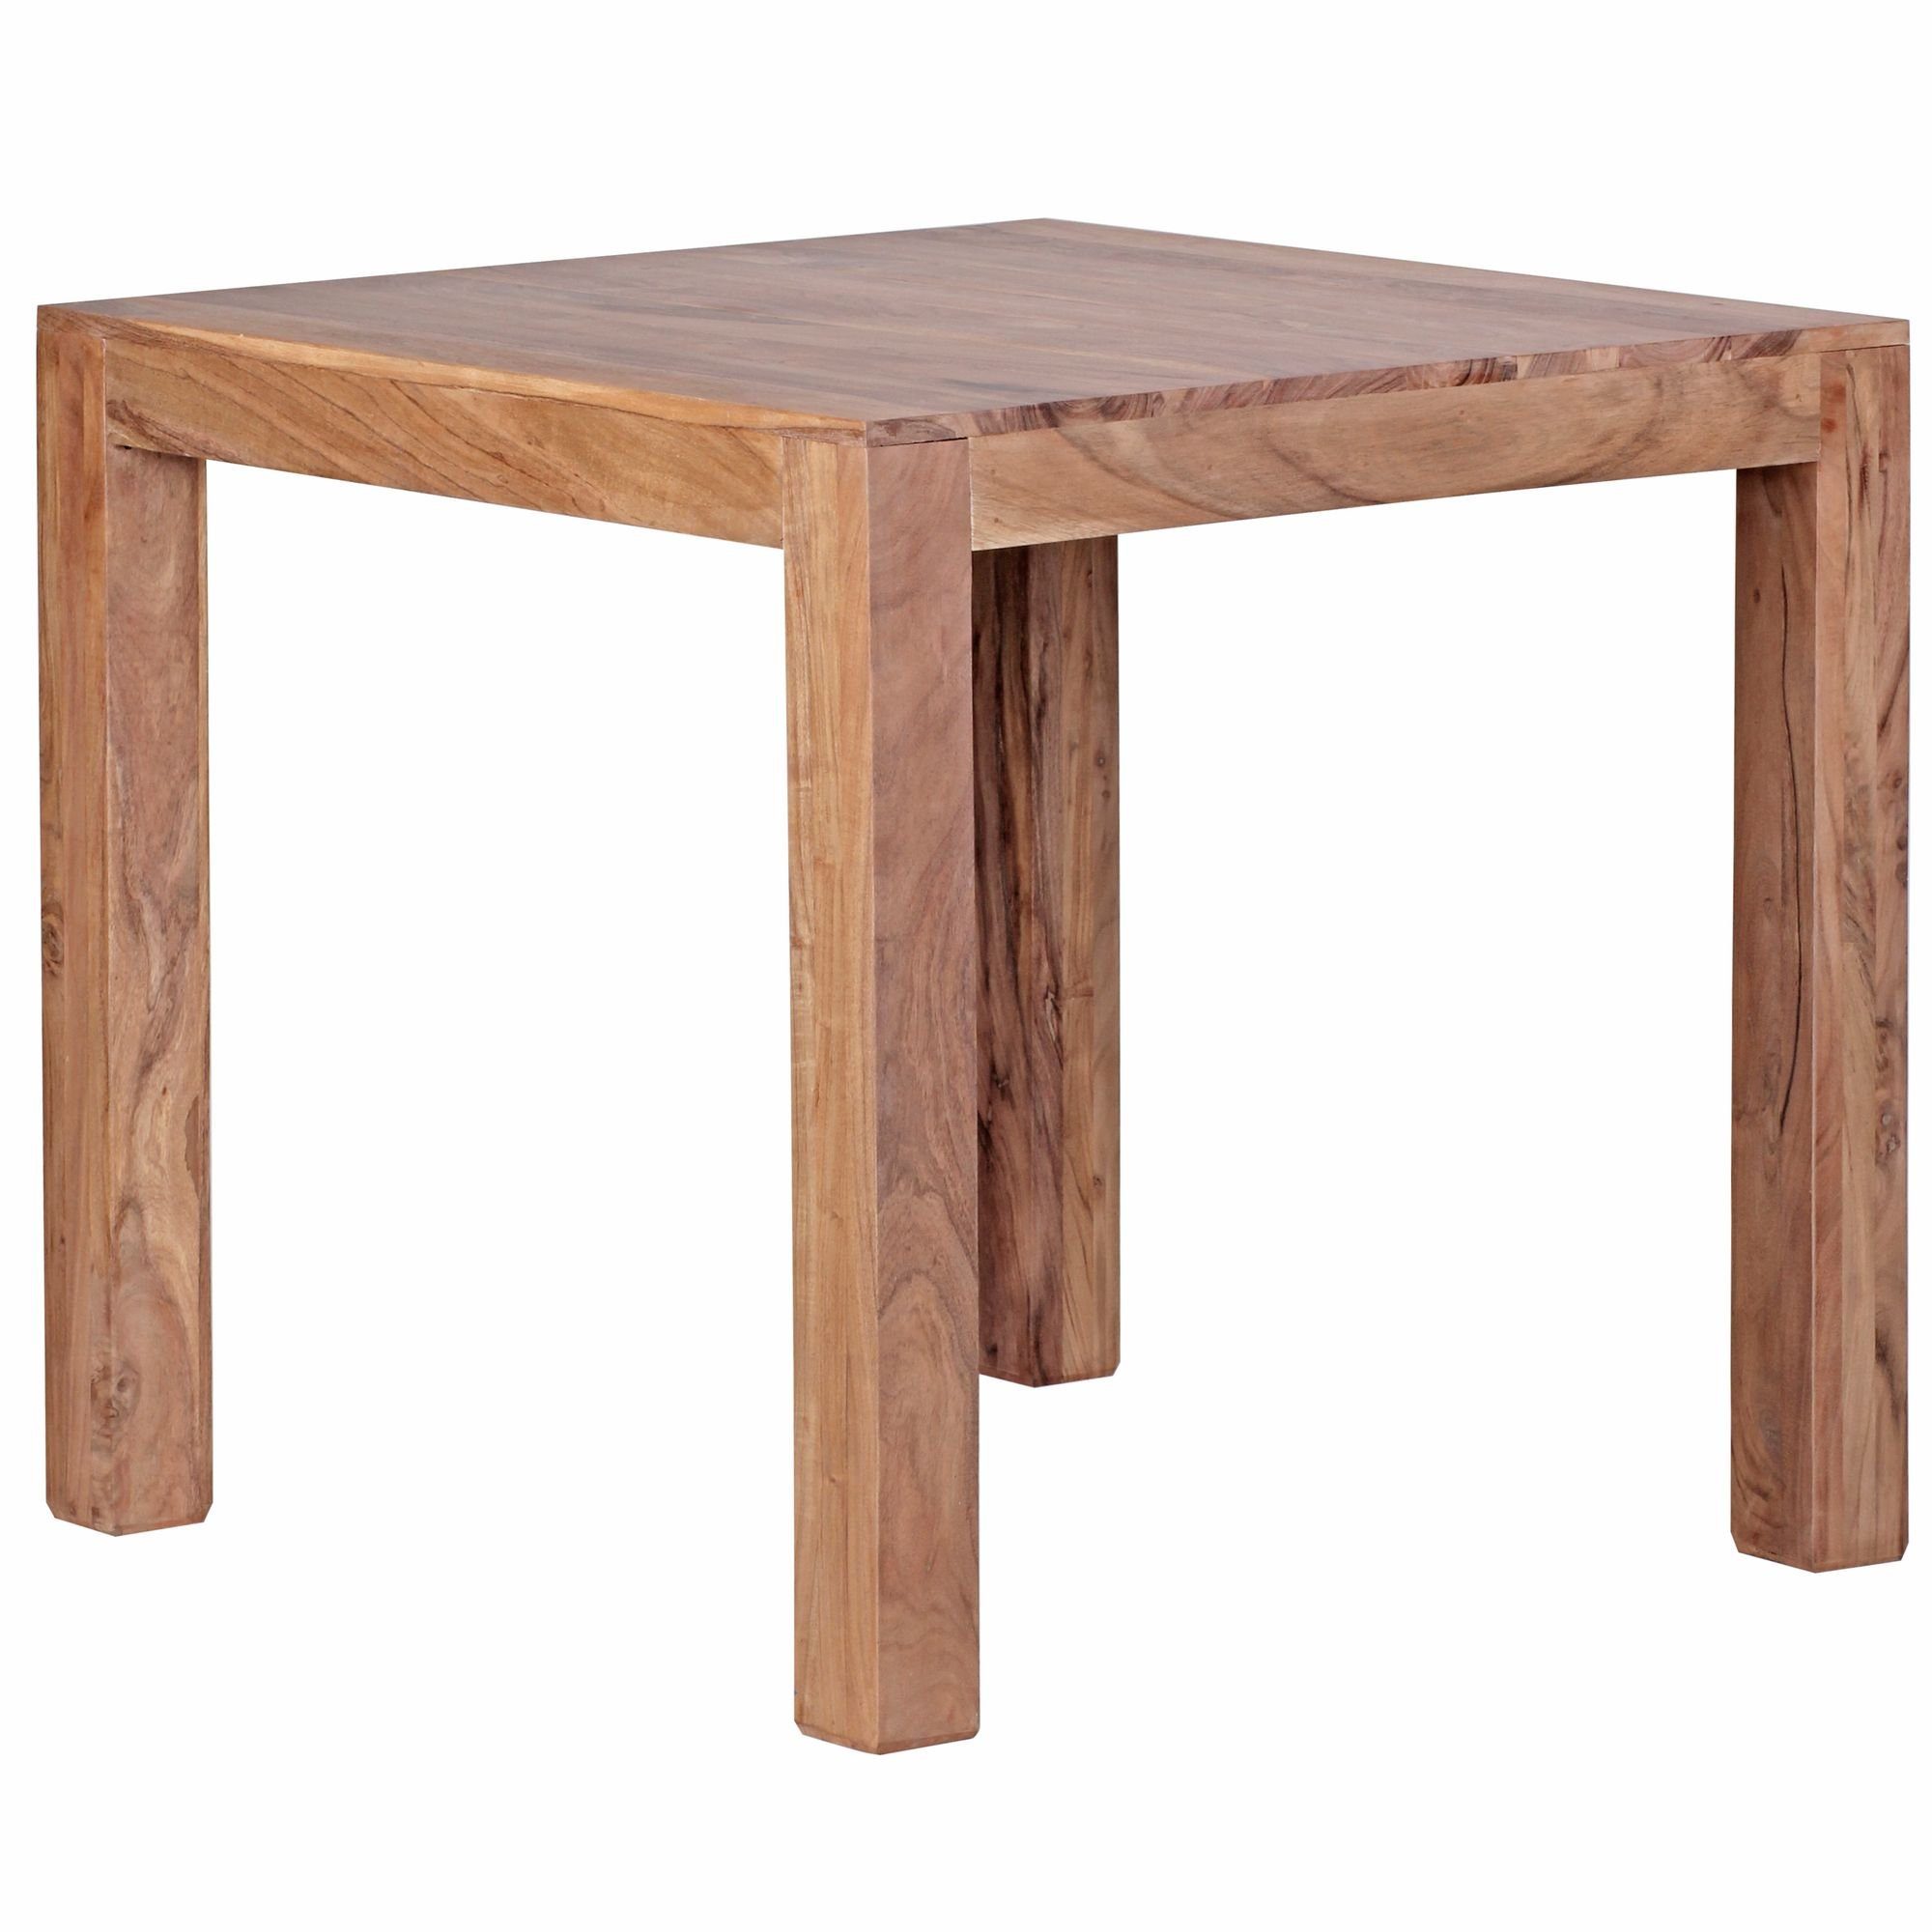 KADIMA DESIGN Esstisch Esszimmertisch Massiv – Quadratische Tischplatte mit Holzmaserung Beige | Beige | Beige